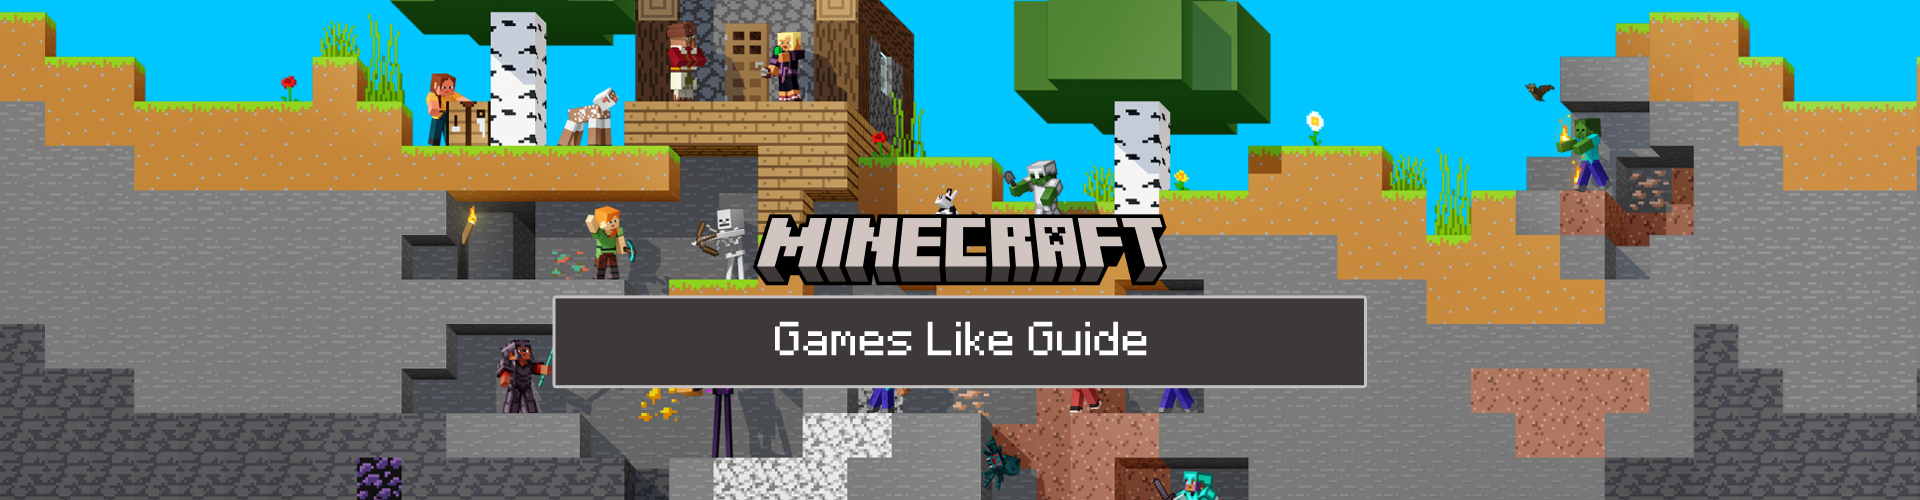 Juegos Como Minecraft: Top 10 de Juegos Sandbox